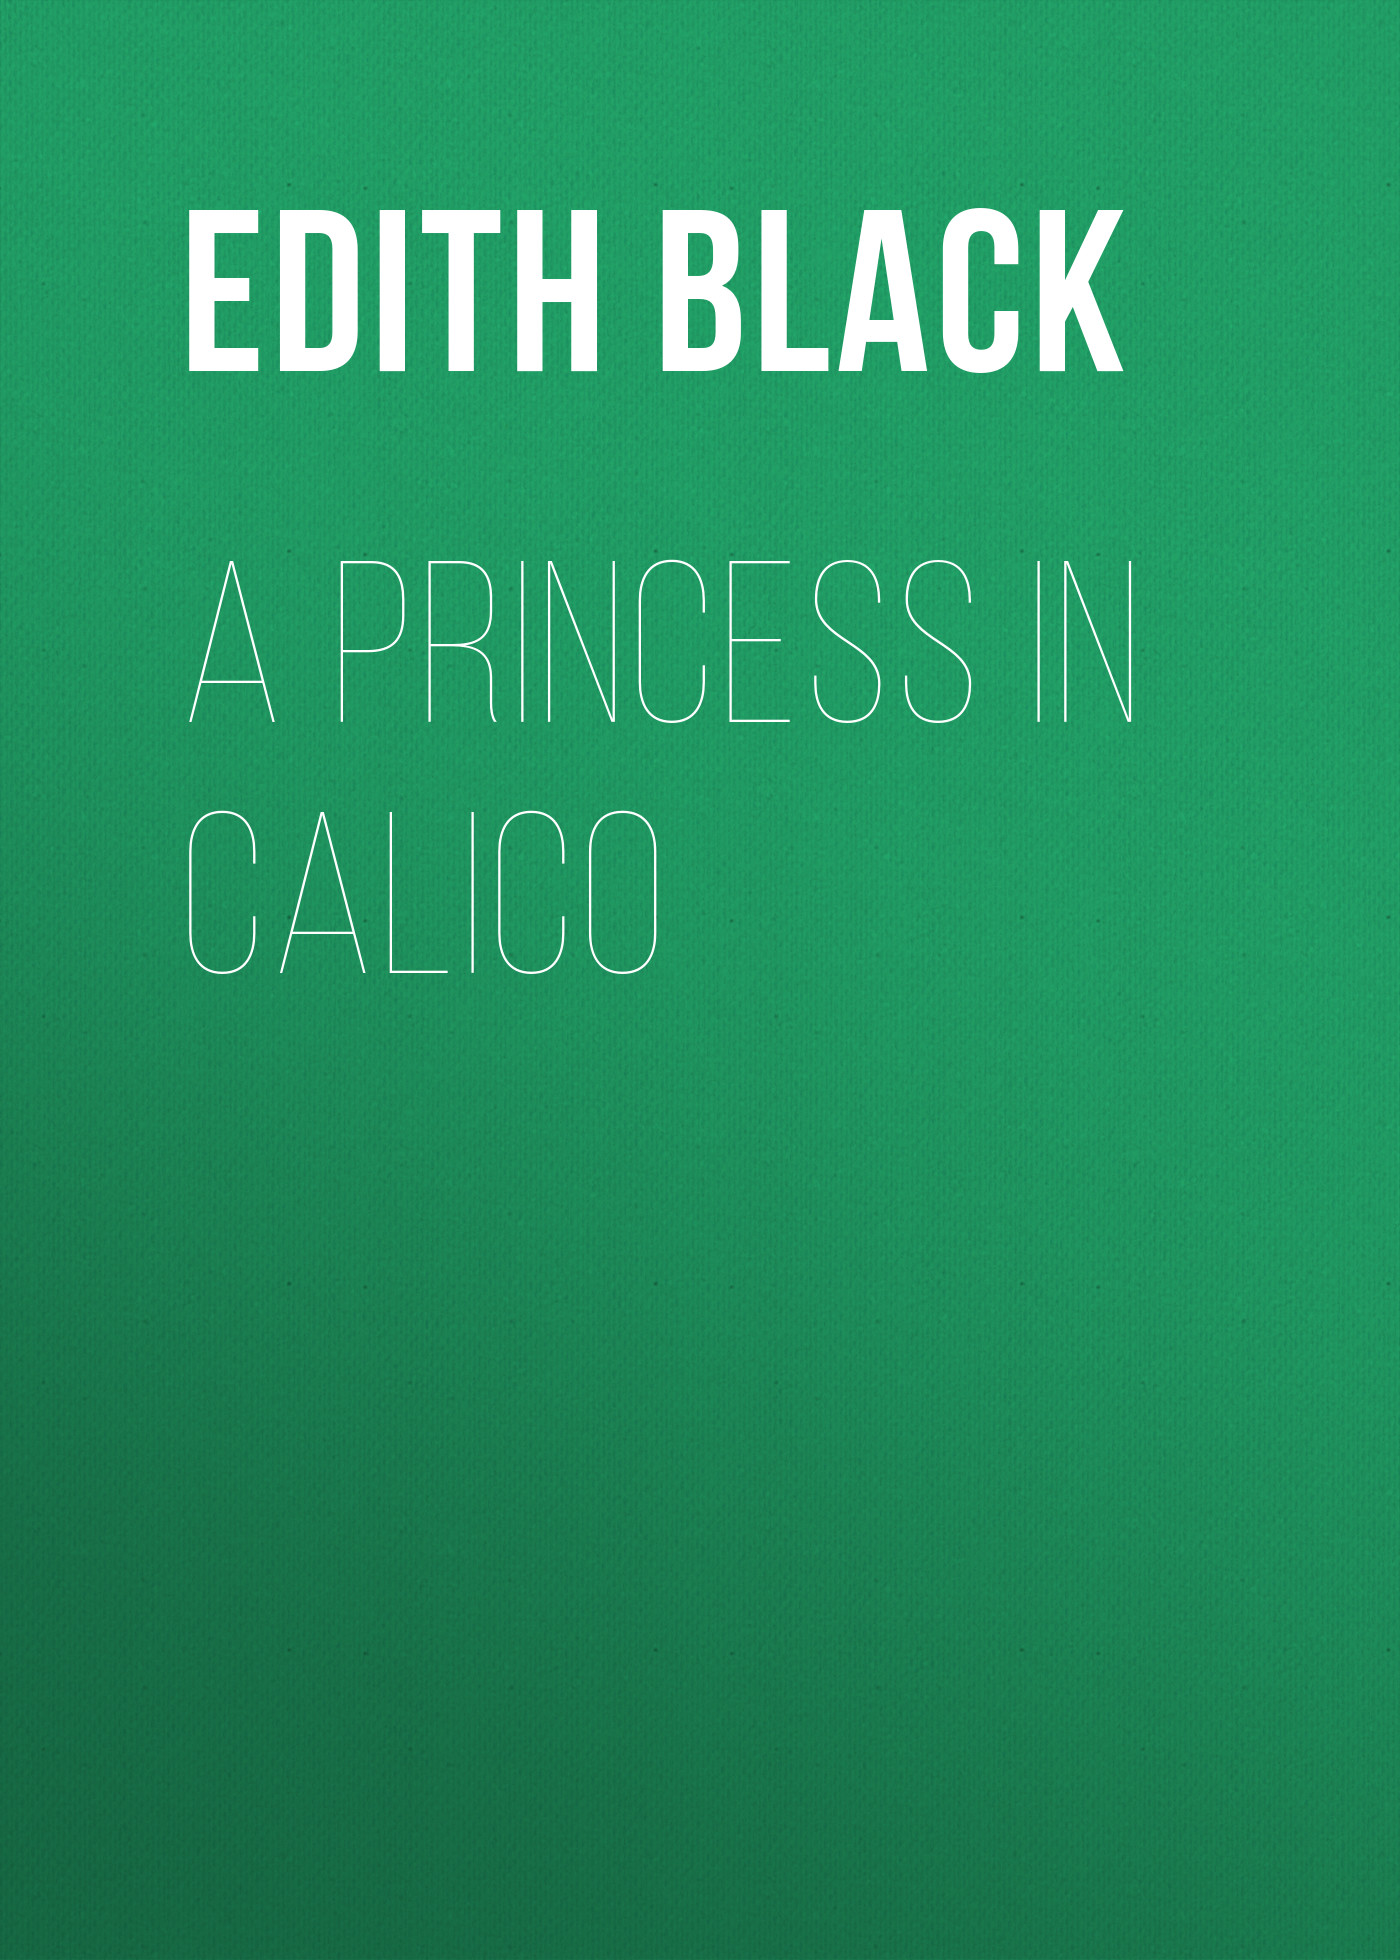 Книга A Princess in Calico из серии , созданная Edith Black, может относится к жанру Зарубежная старинная литература, Зарубежная классика, Зарубежные детские книги. Стоимость электронной книги A Princess in Calico с идентификатором 24178652 составляет 0.90 руб.